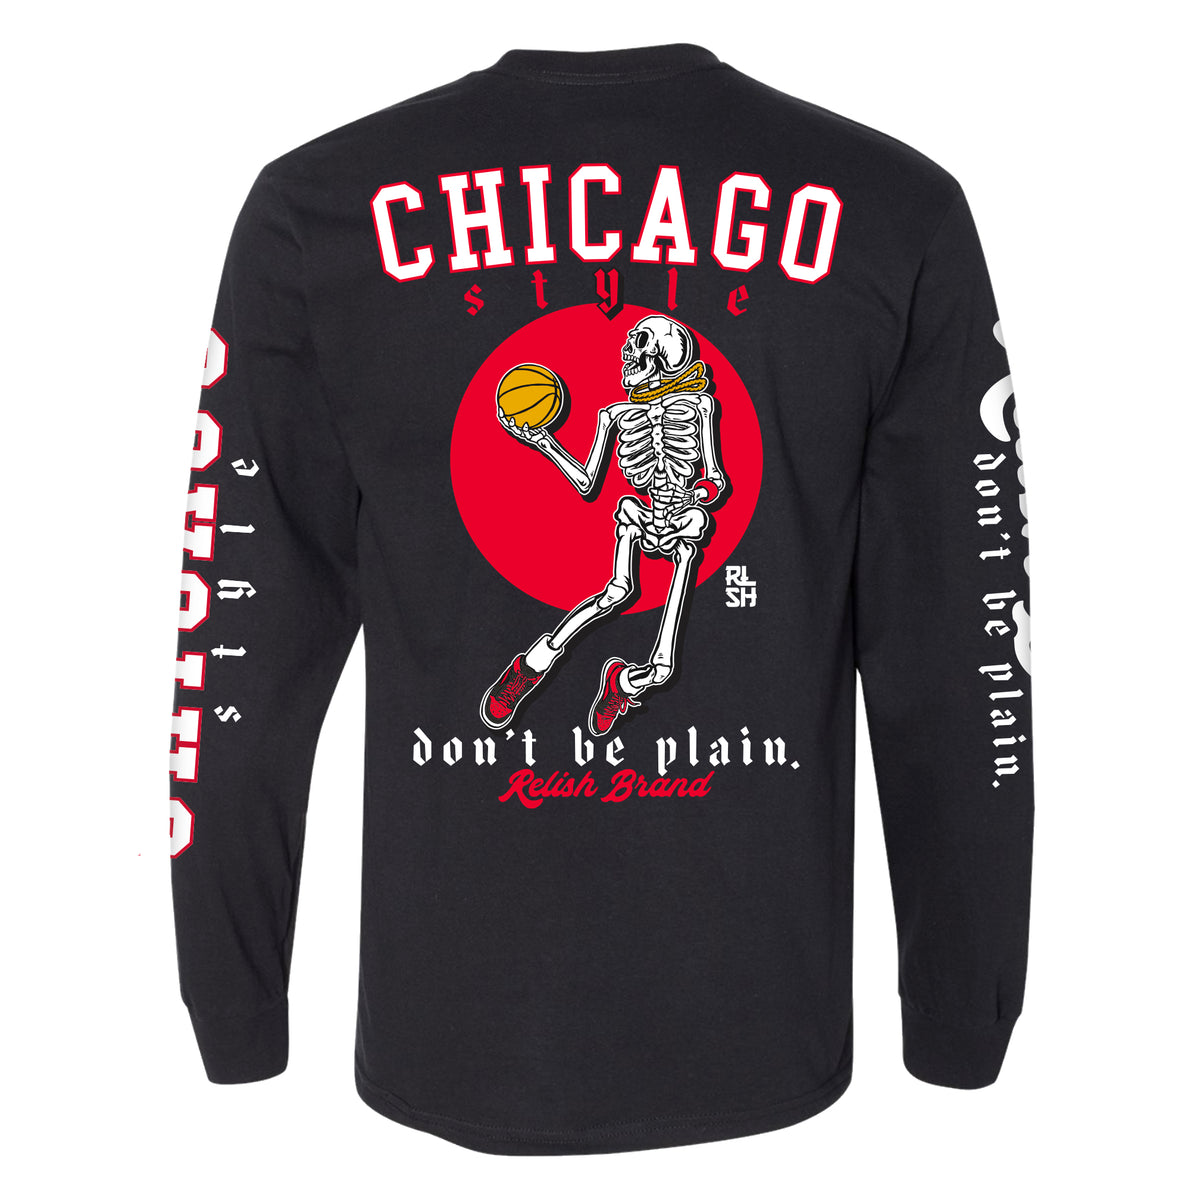 Nike Basketball Chicago Bulls t-shirt in black